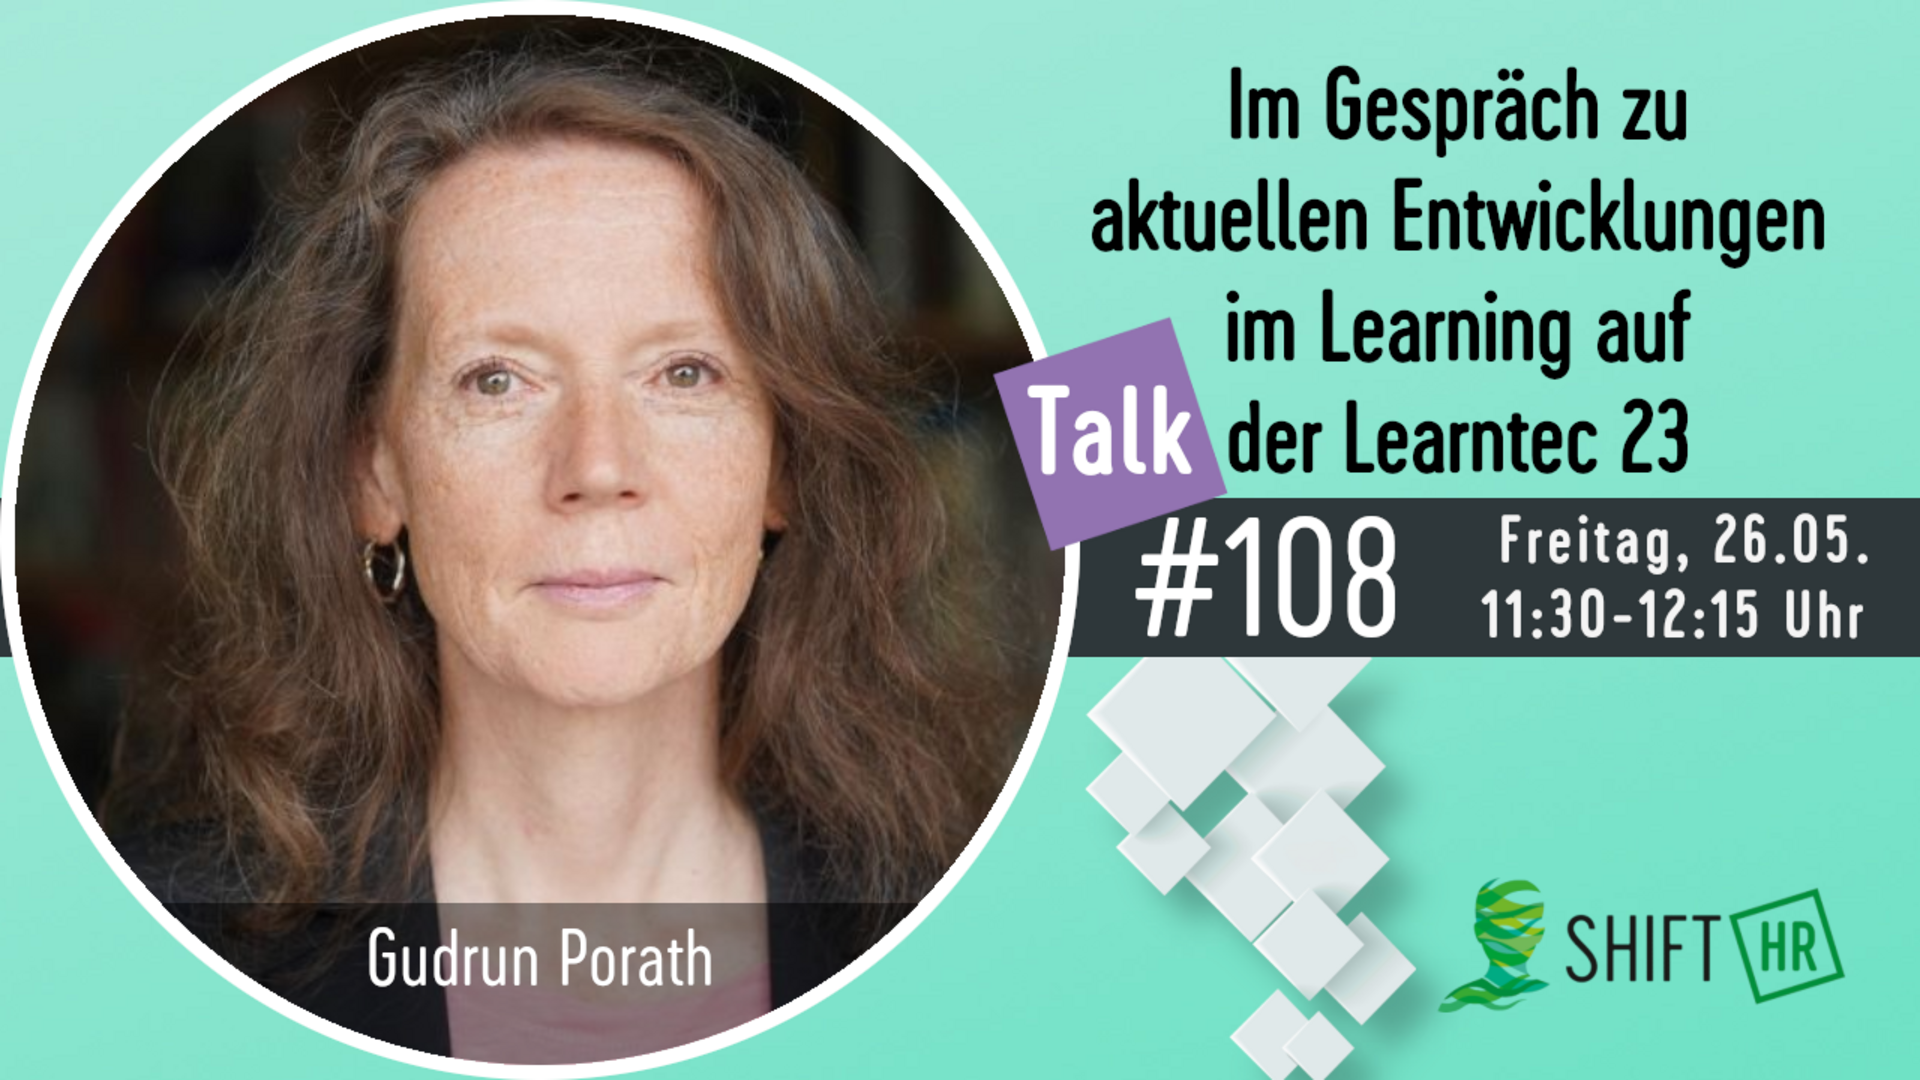 Im Gespräch mit Gudrun Porath zu aktuellen Entwicklungen auf im Learning